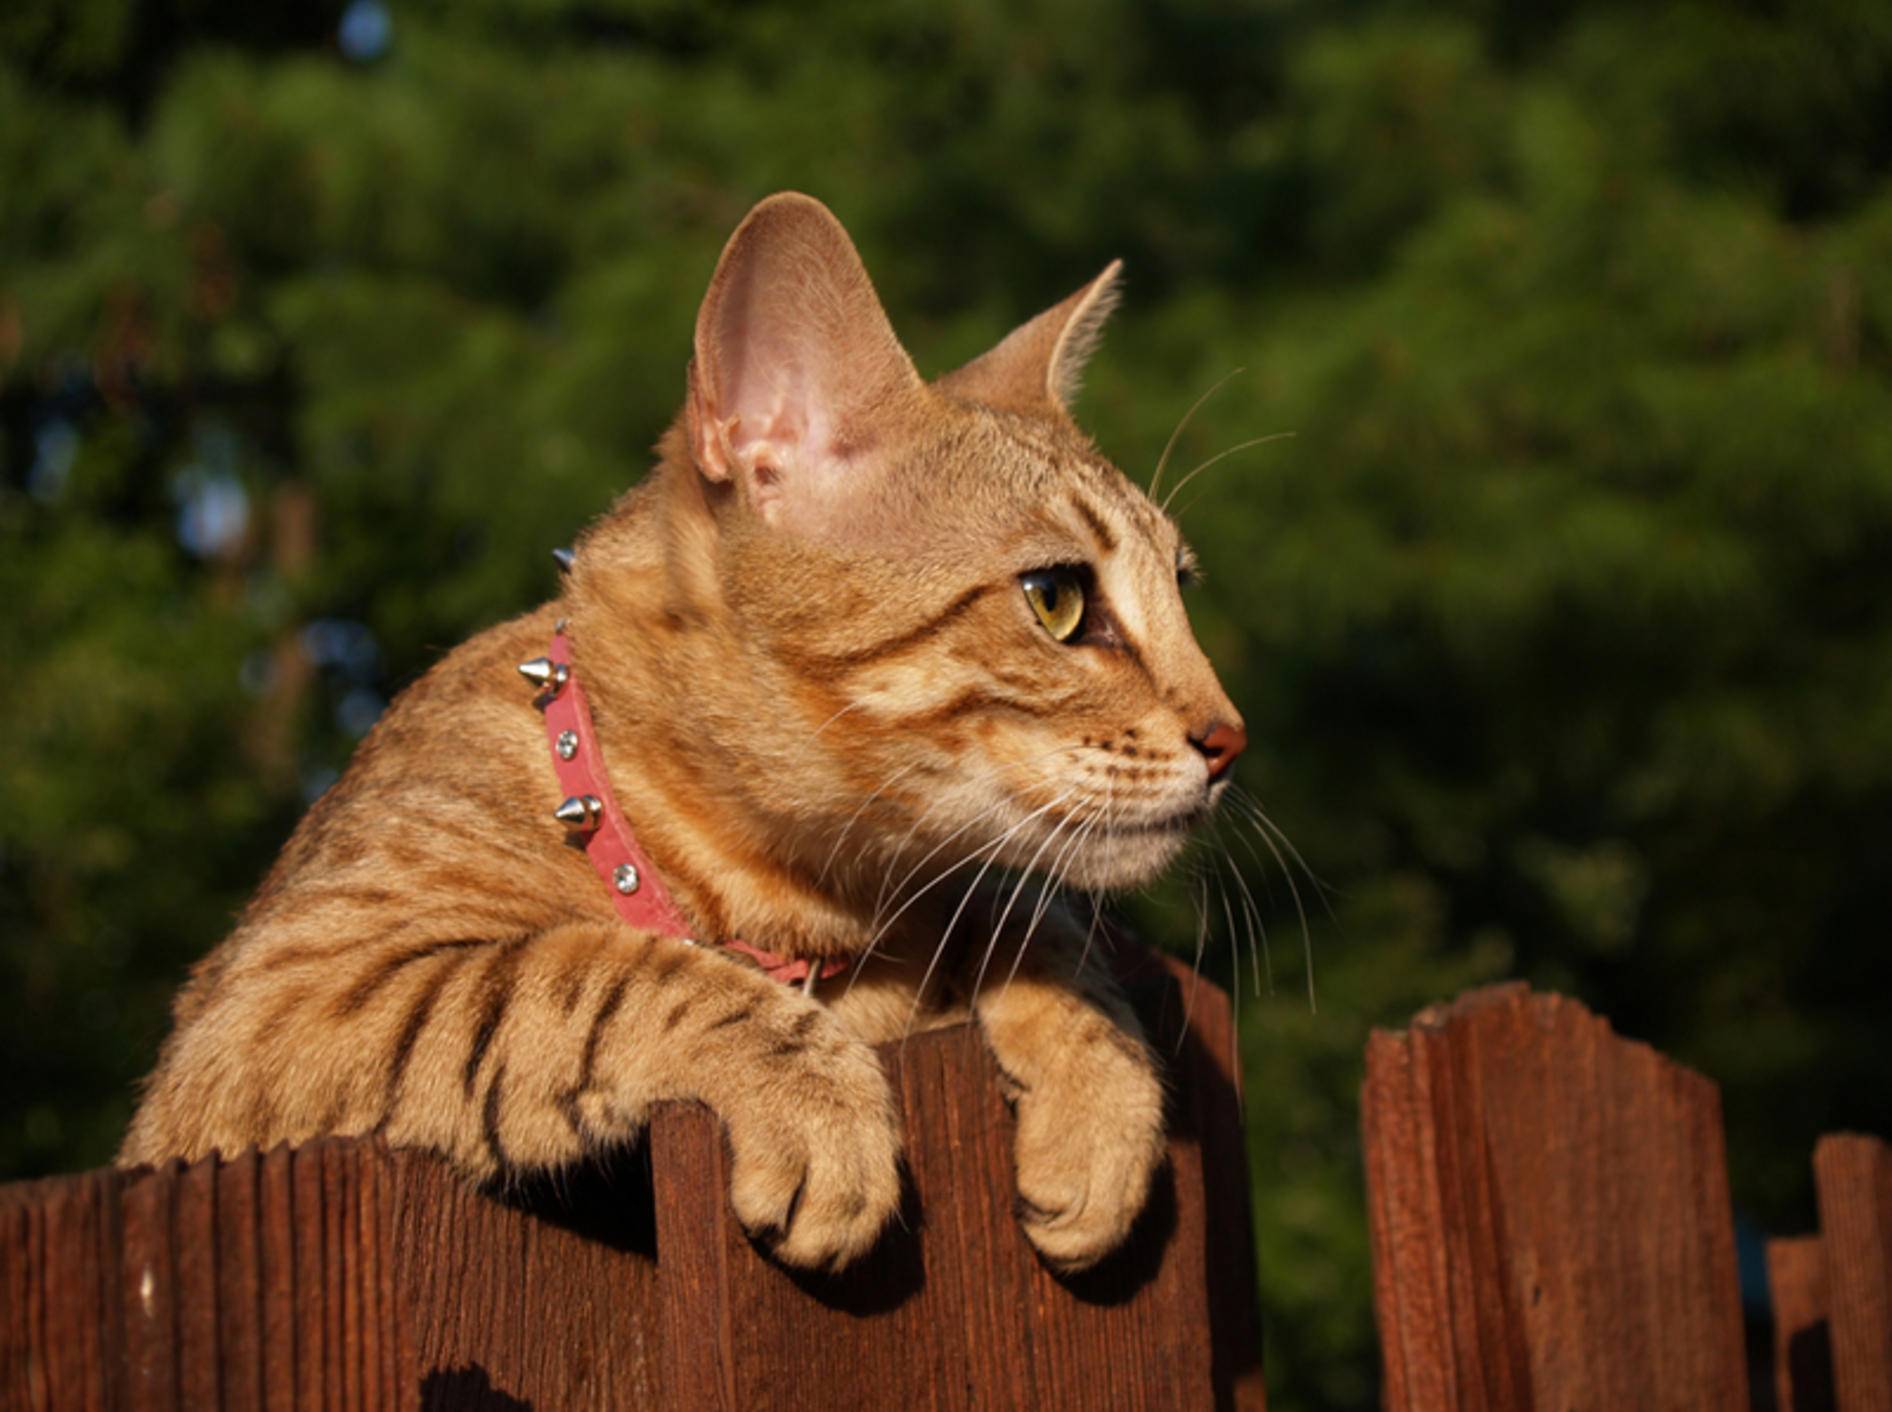 Verspielte Savannah-Katze wirft einen neugierigen Blick über den Zaun – Bild: Shutterstock / Lindasj22